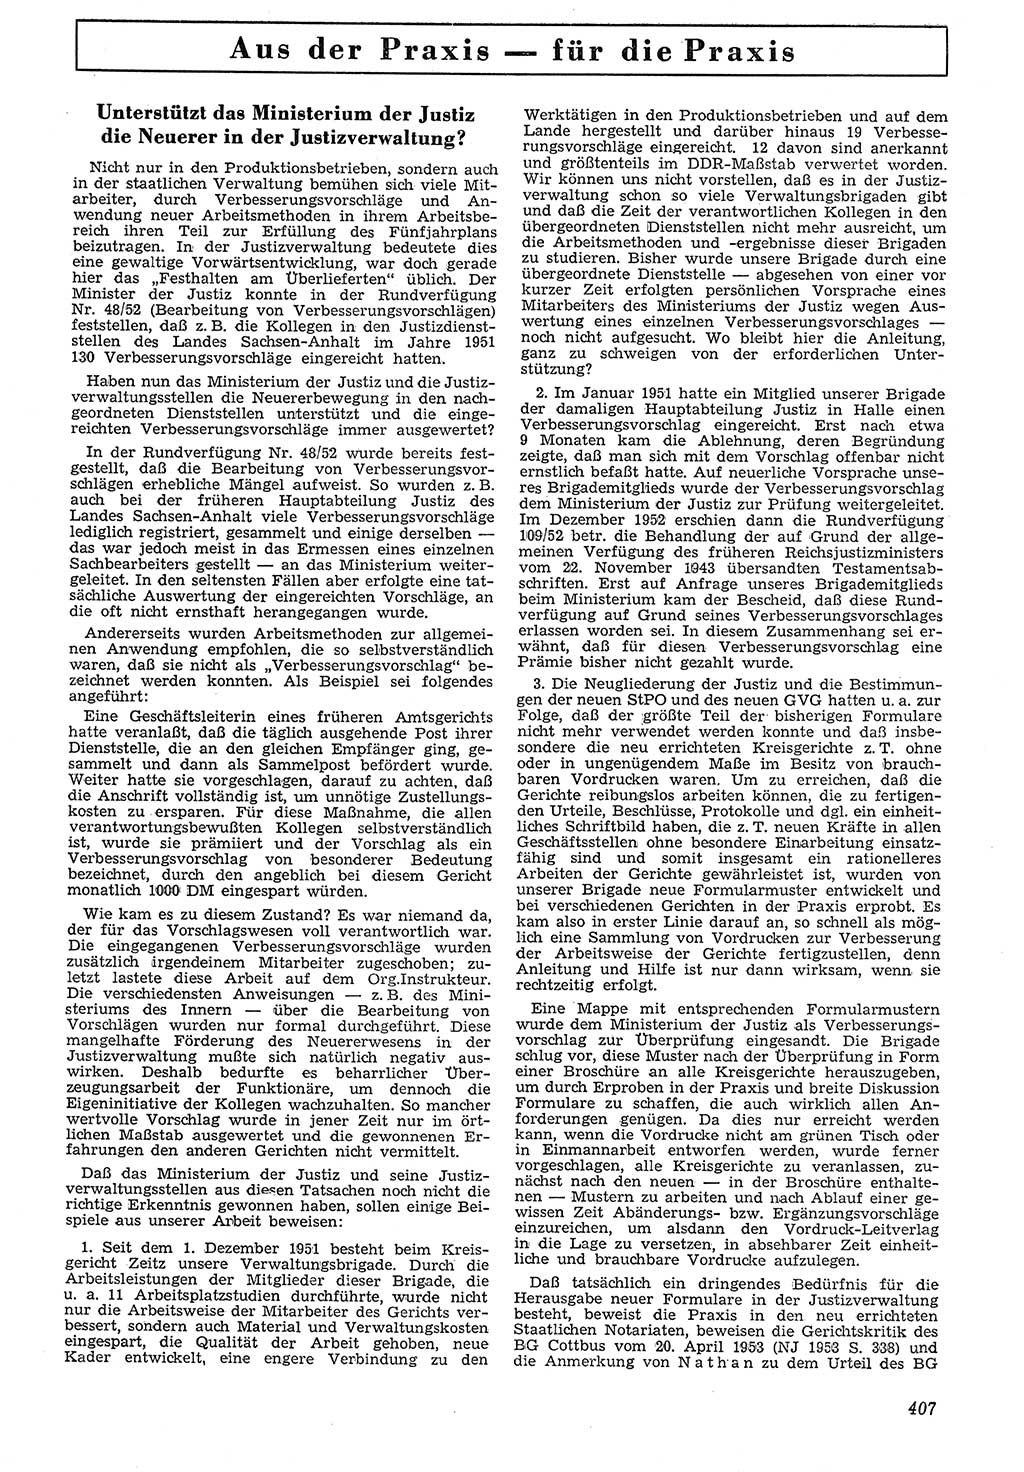 Neue Justiz (NJ), Zeitschrift für Recht und Rechtswissenschaft [Deutsche Demokratische Republik (DDR)], 7. Jahrgang 1953, Seite 407 (NJ DDR 1953, S. 407)